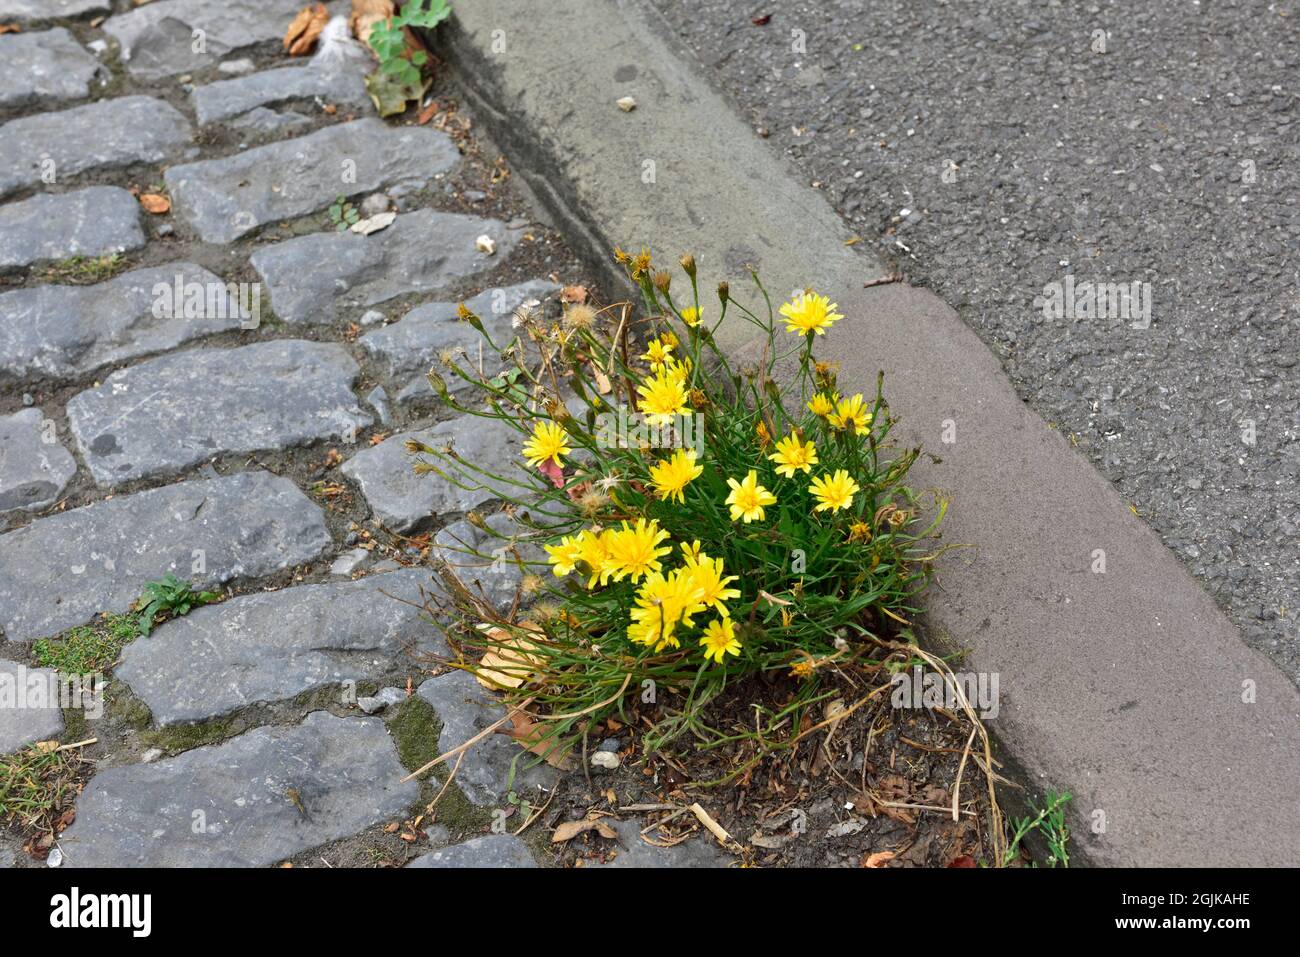 Unkraut mit gelben Blüten wächst in Rissen der Straße, Großbritannien Stockfoto